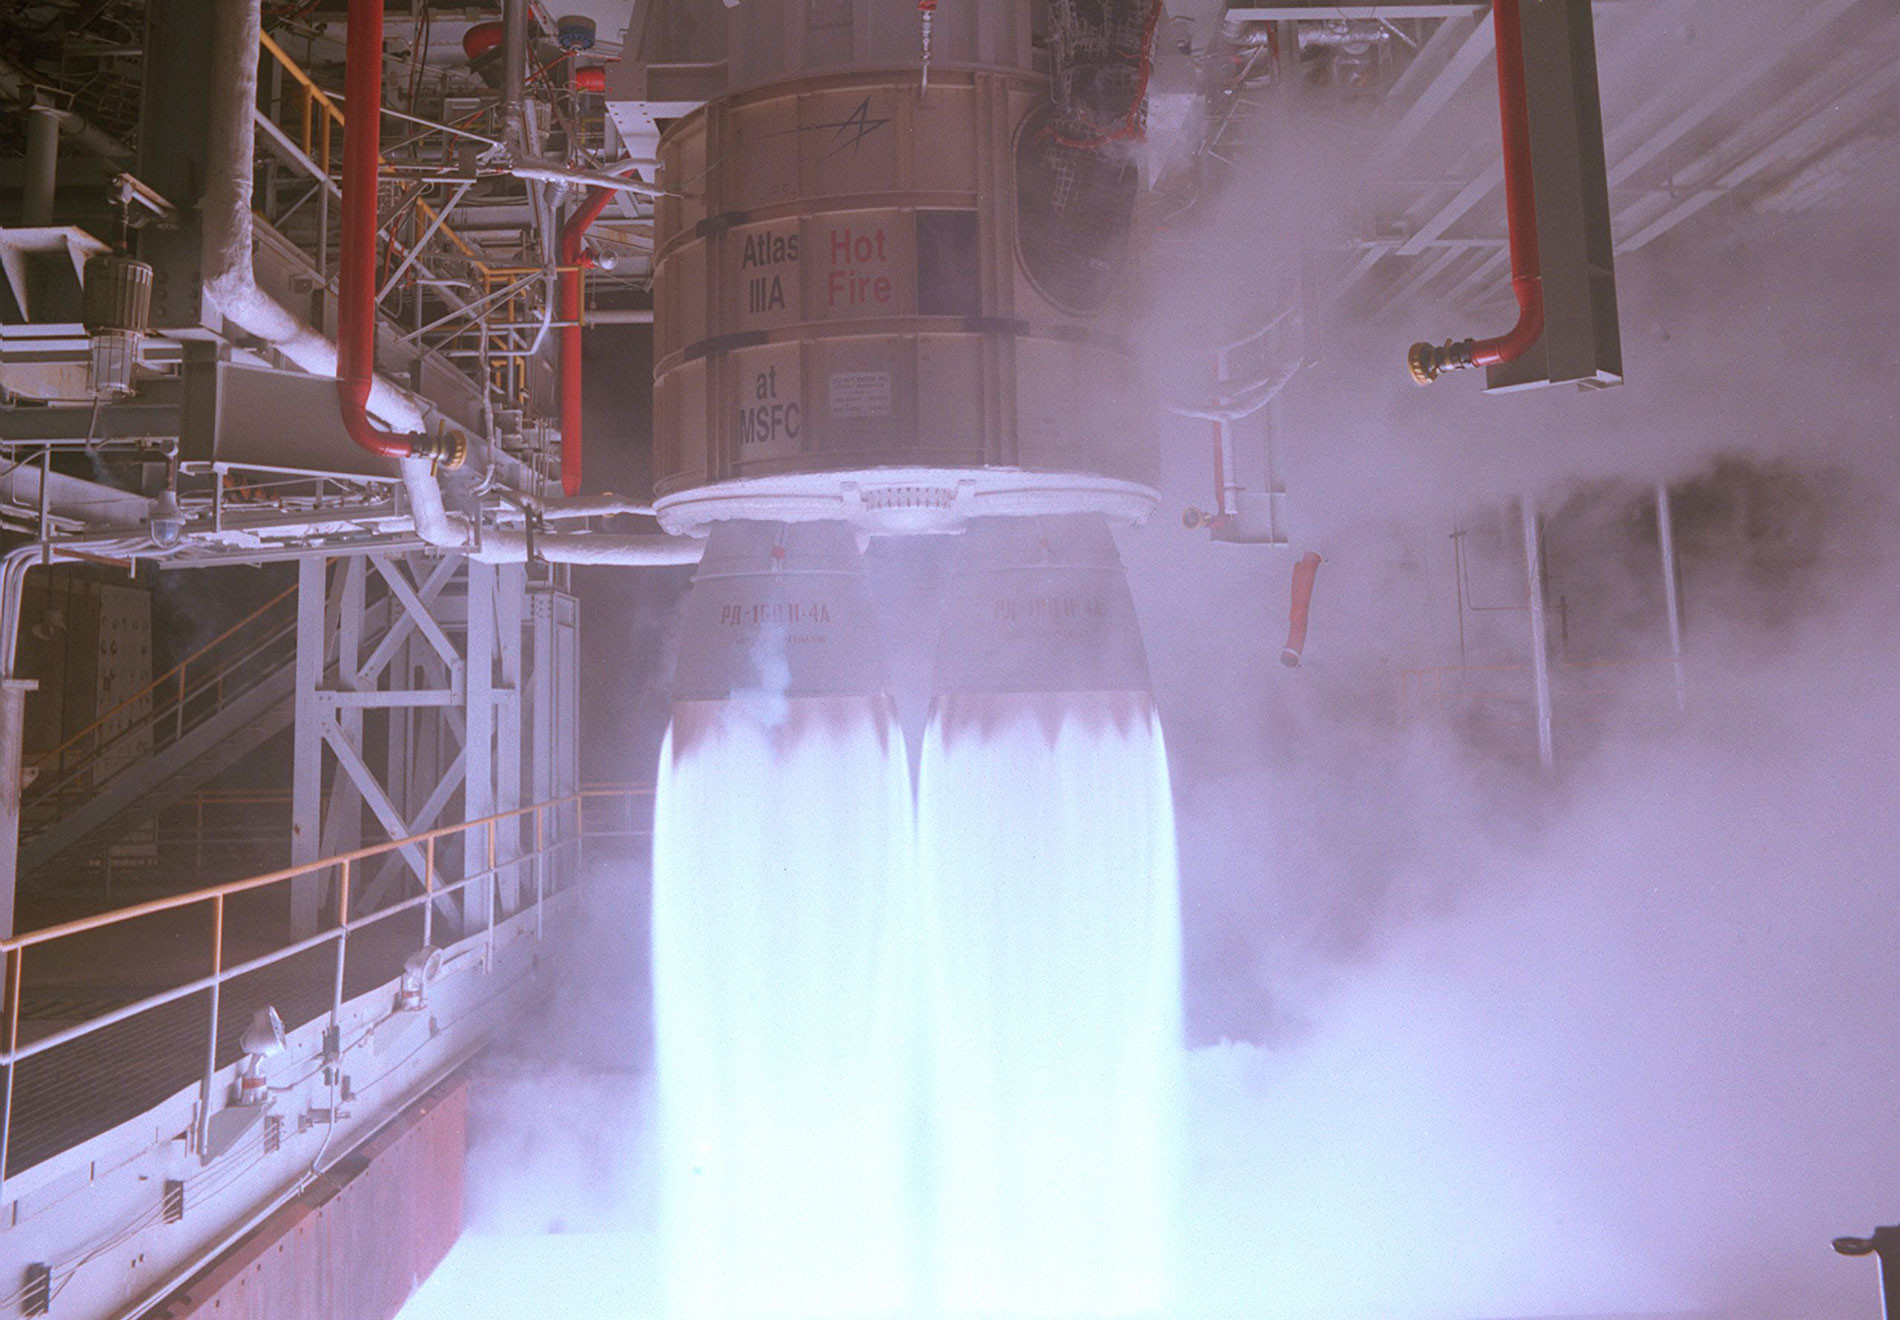 Двигатель РД-180 на испытательном стенде в Космическом центре Маршалла. Фото © Wikipedia